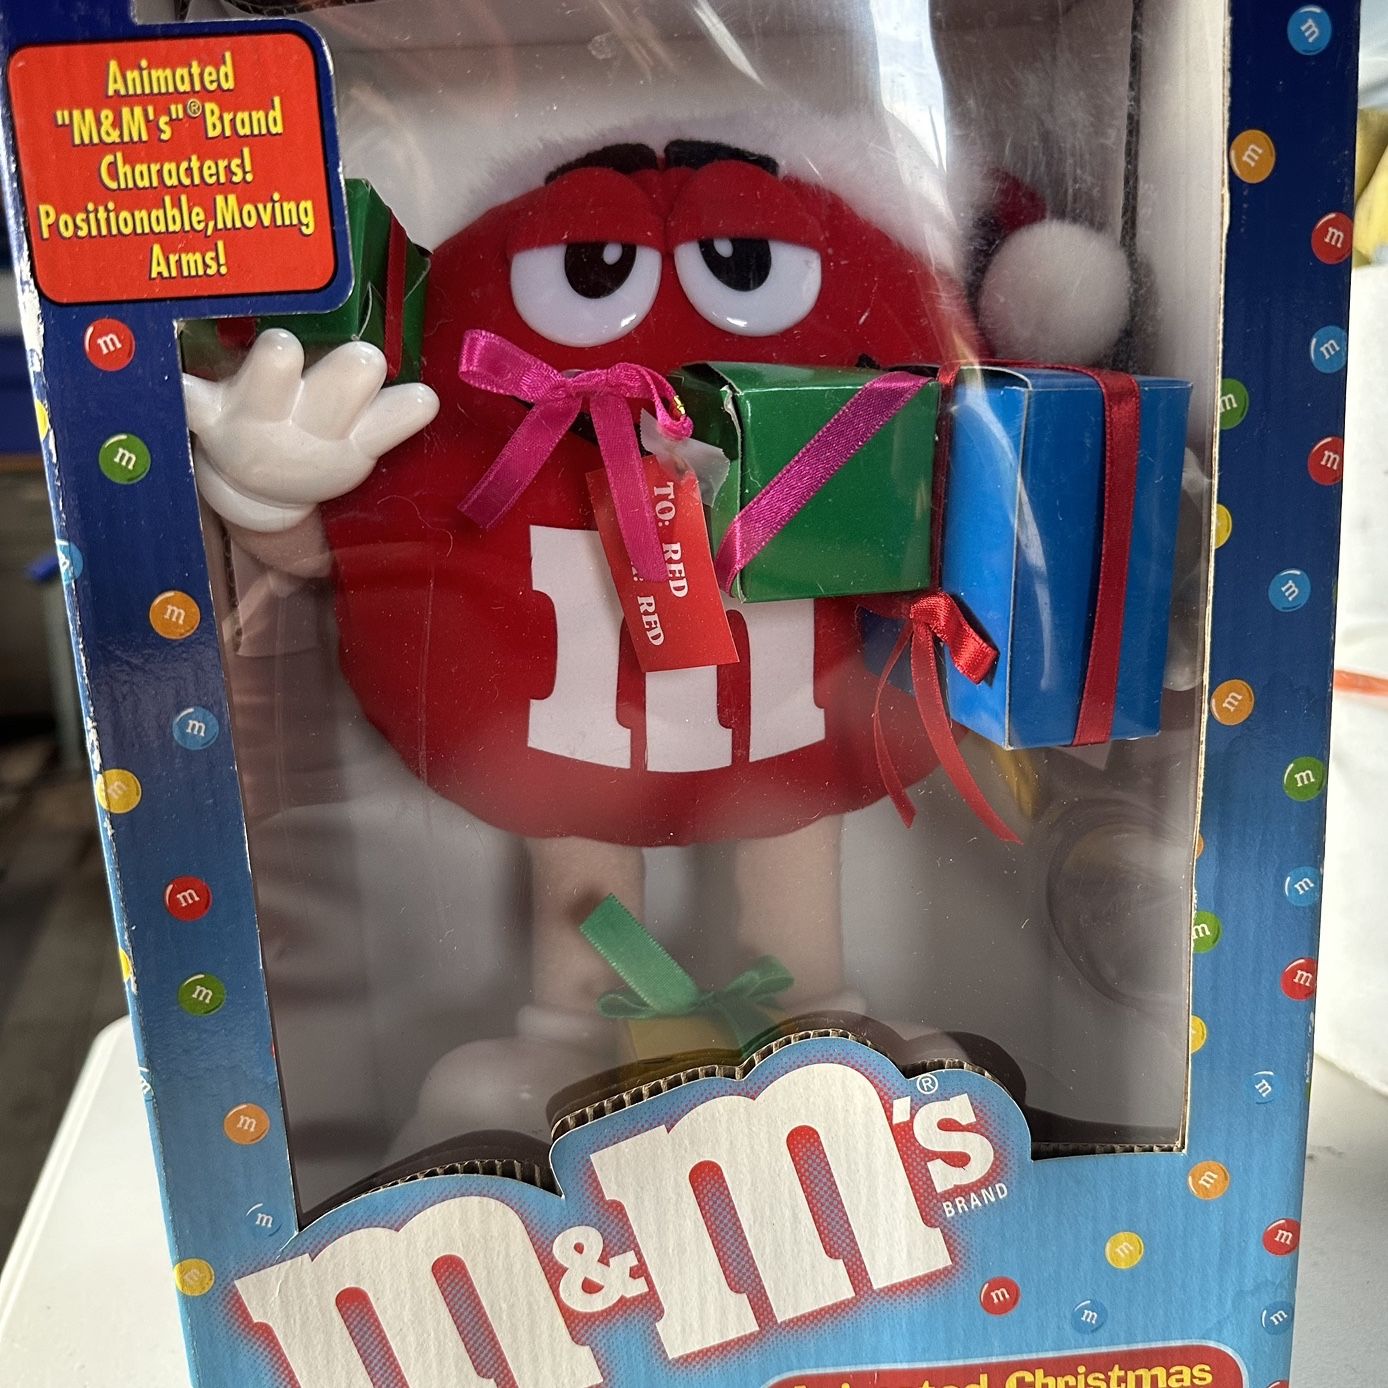 Collectible Animated M&M’s Christmas Display Figure